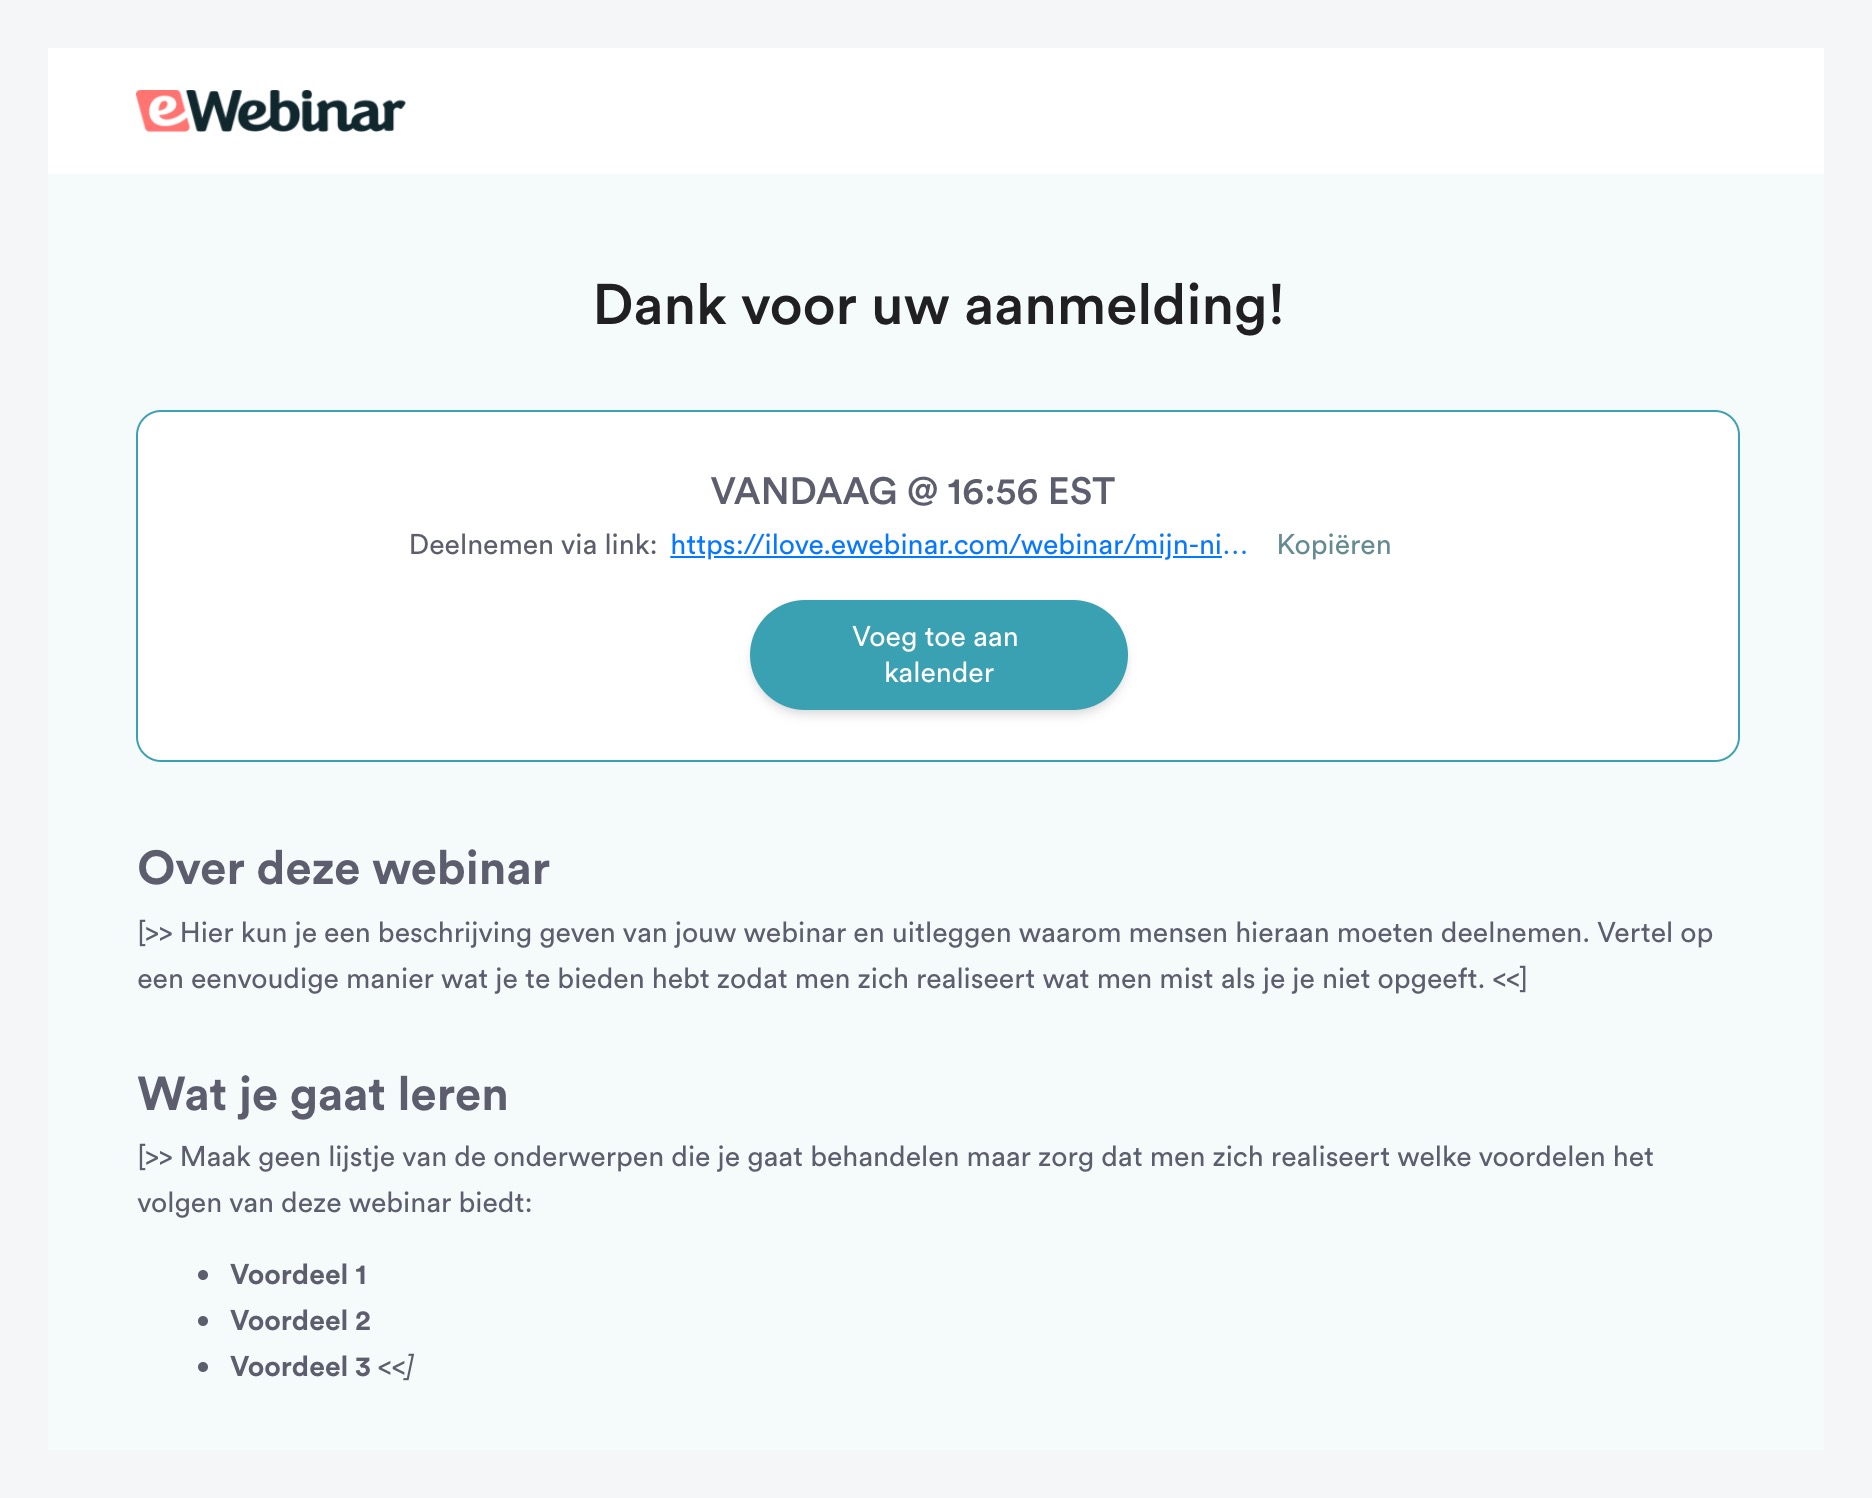 Página de agradecimiento en la plantilla estándar de eWebinar en holandés